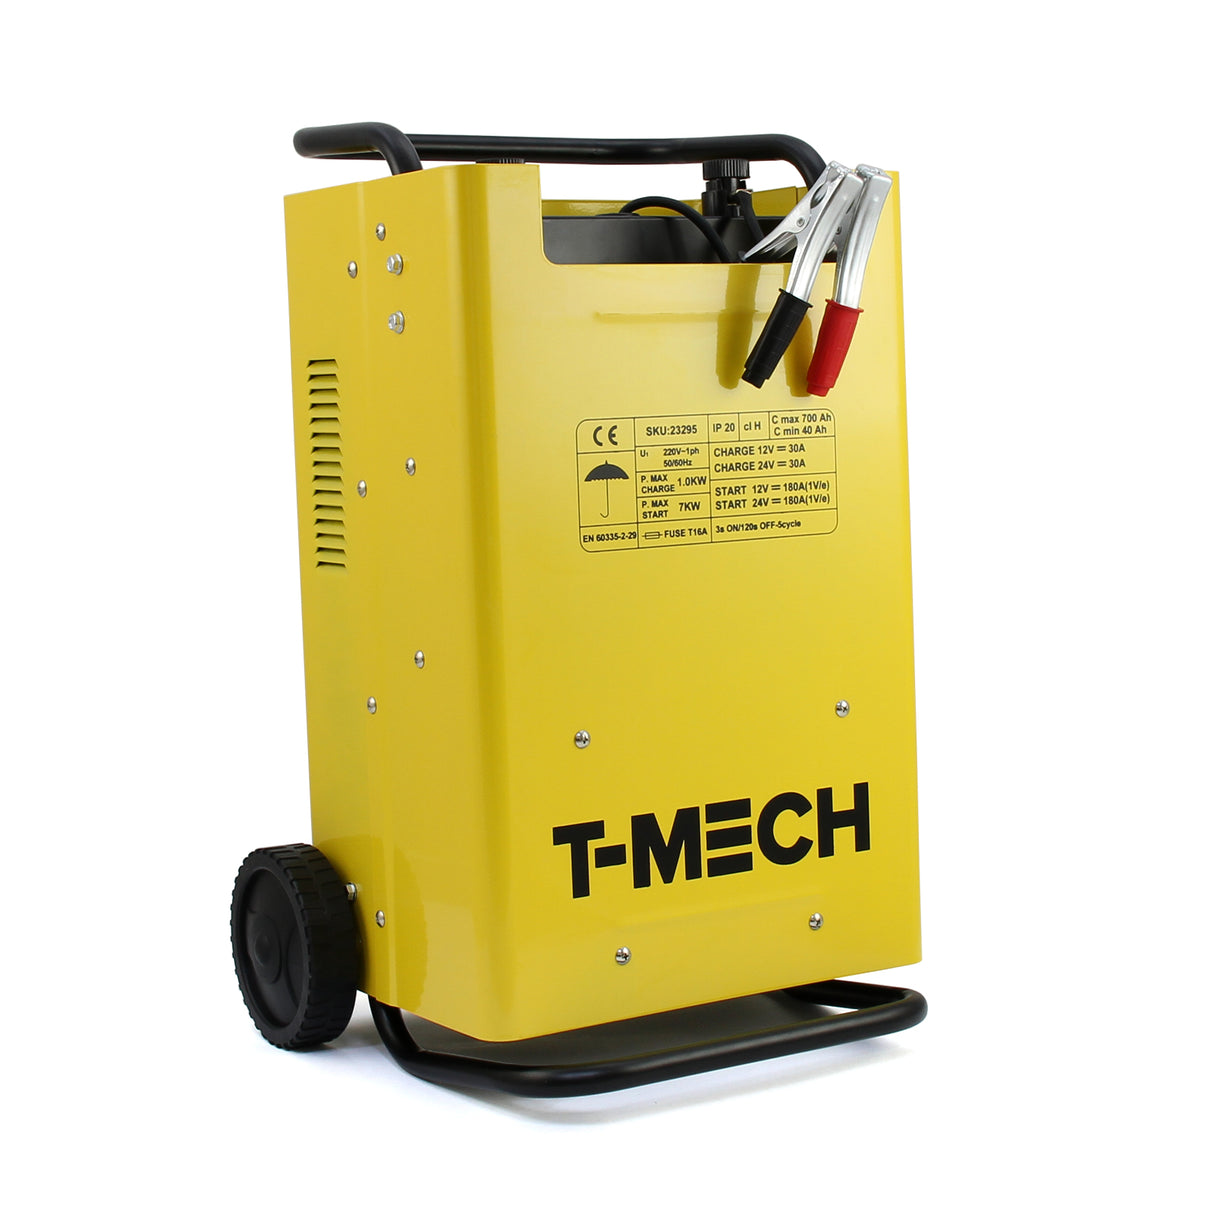 T-Mech Battery Charger & Starter